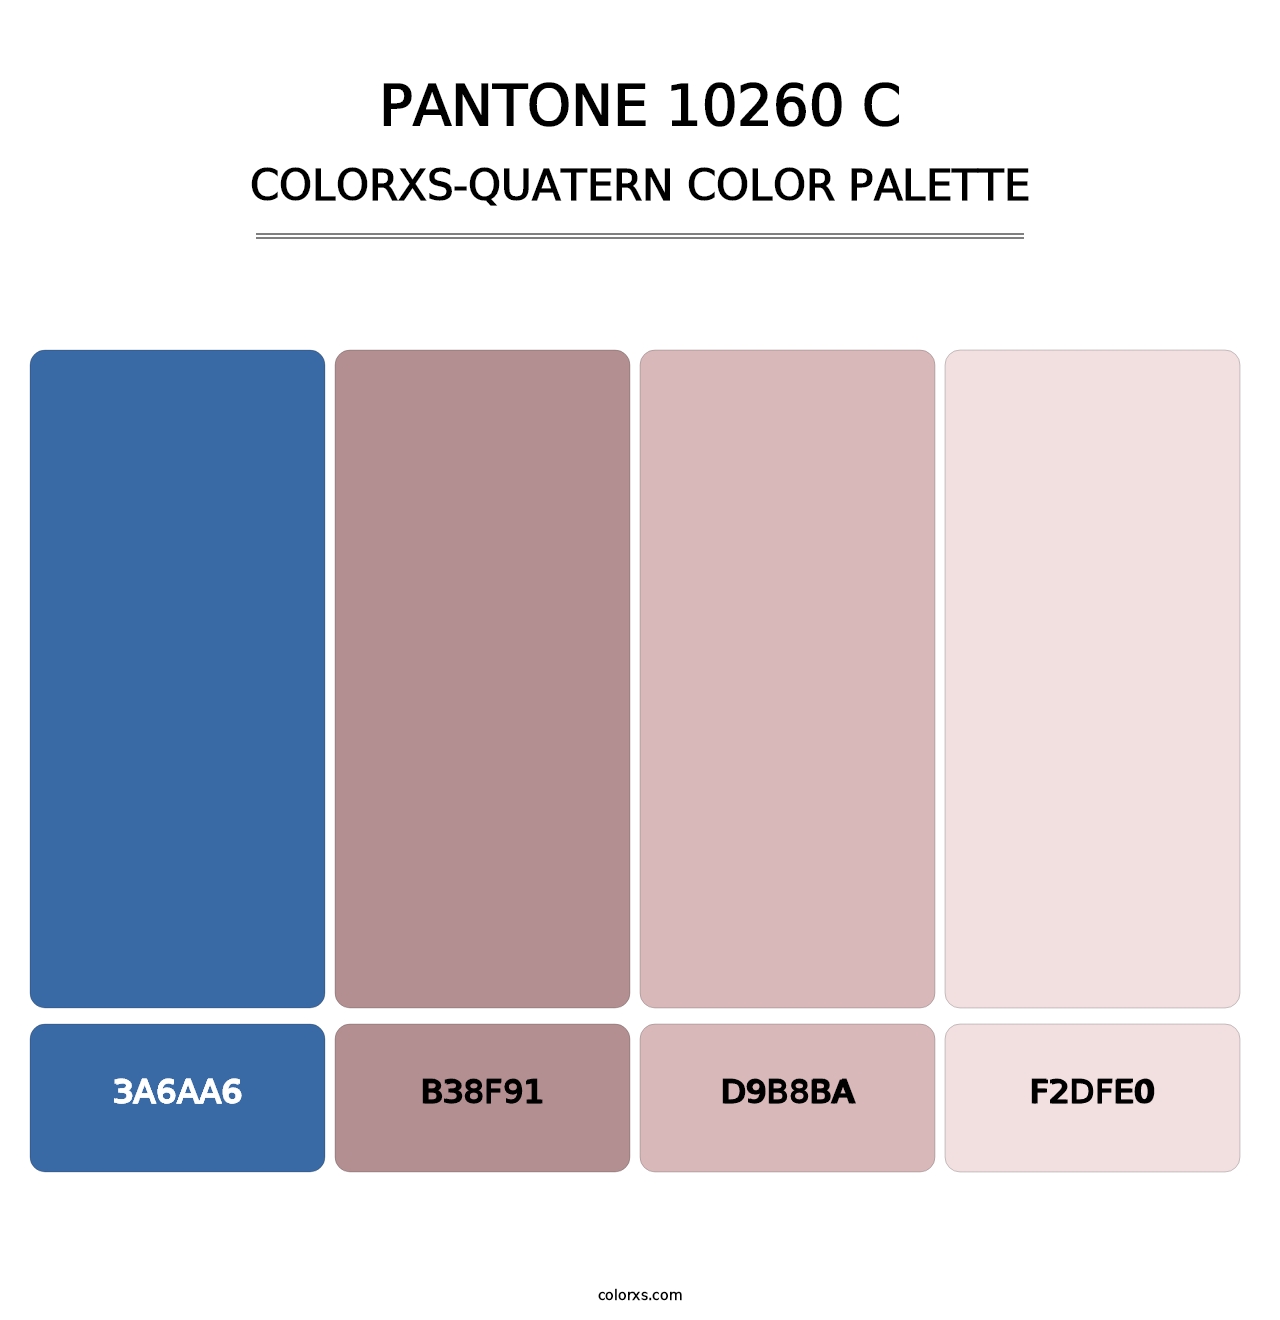 PANTONE 10260 C - Colorxs Quatern Palette